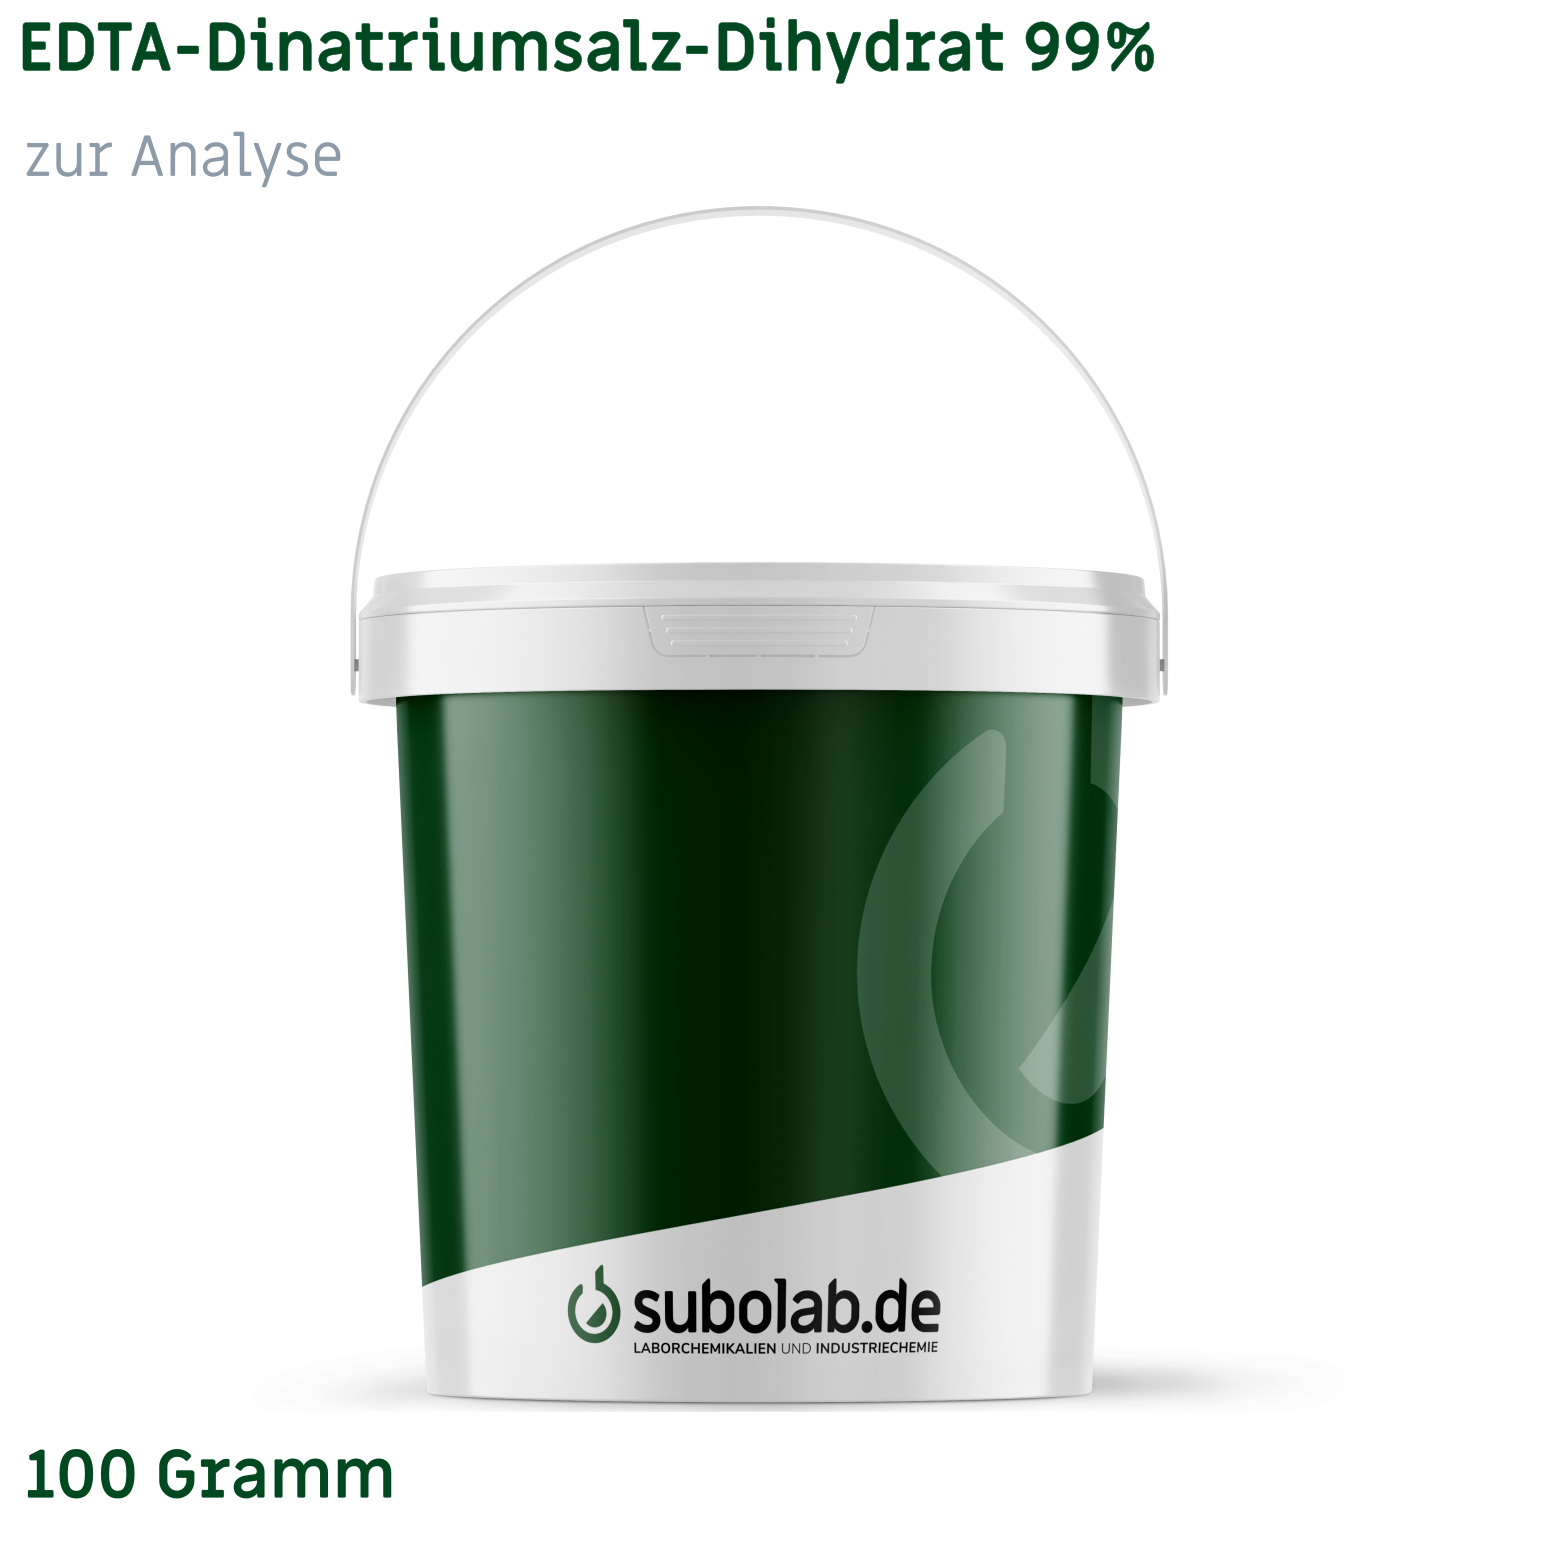 Bild von EDTA - Dinatriumsalz - Dihydrat 99% zur Analyse (100 Gramm)